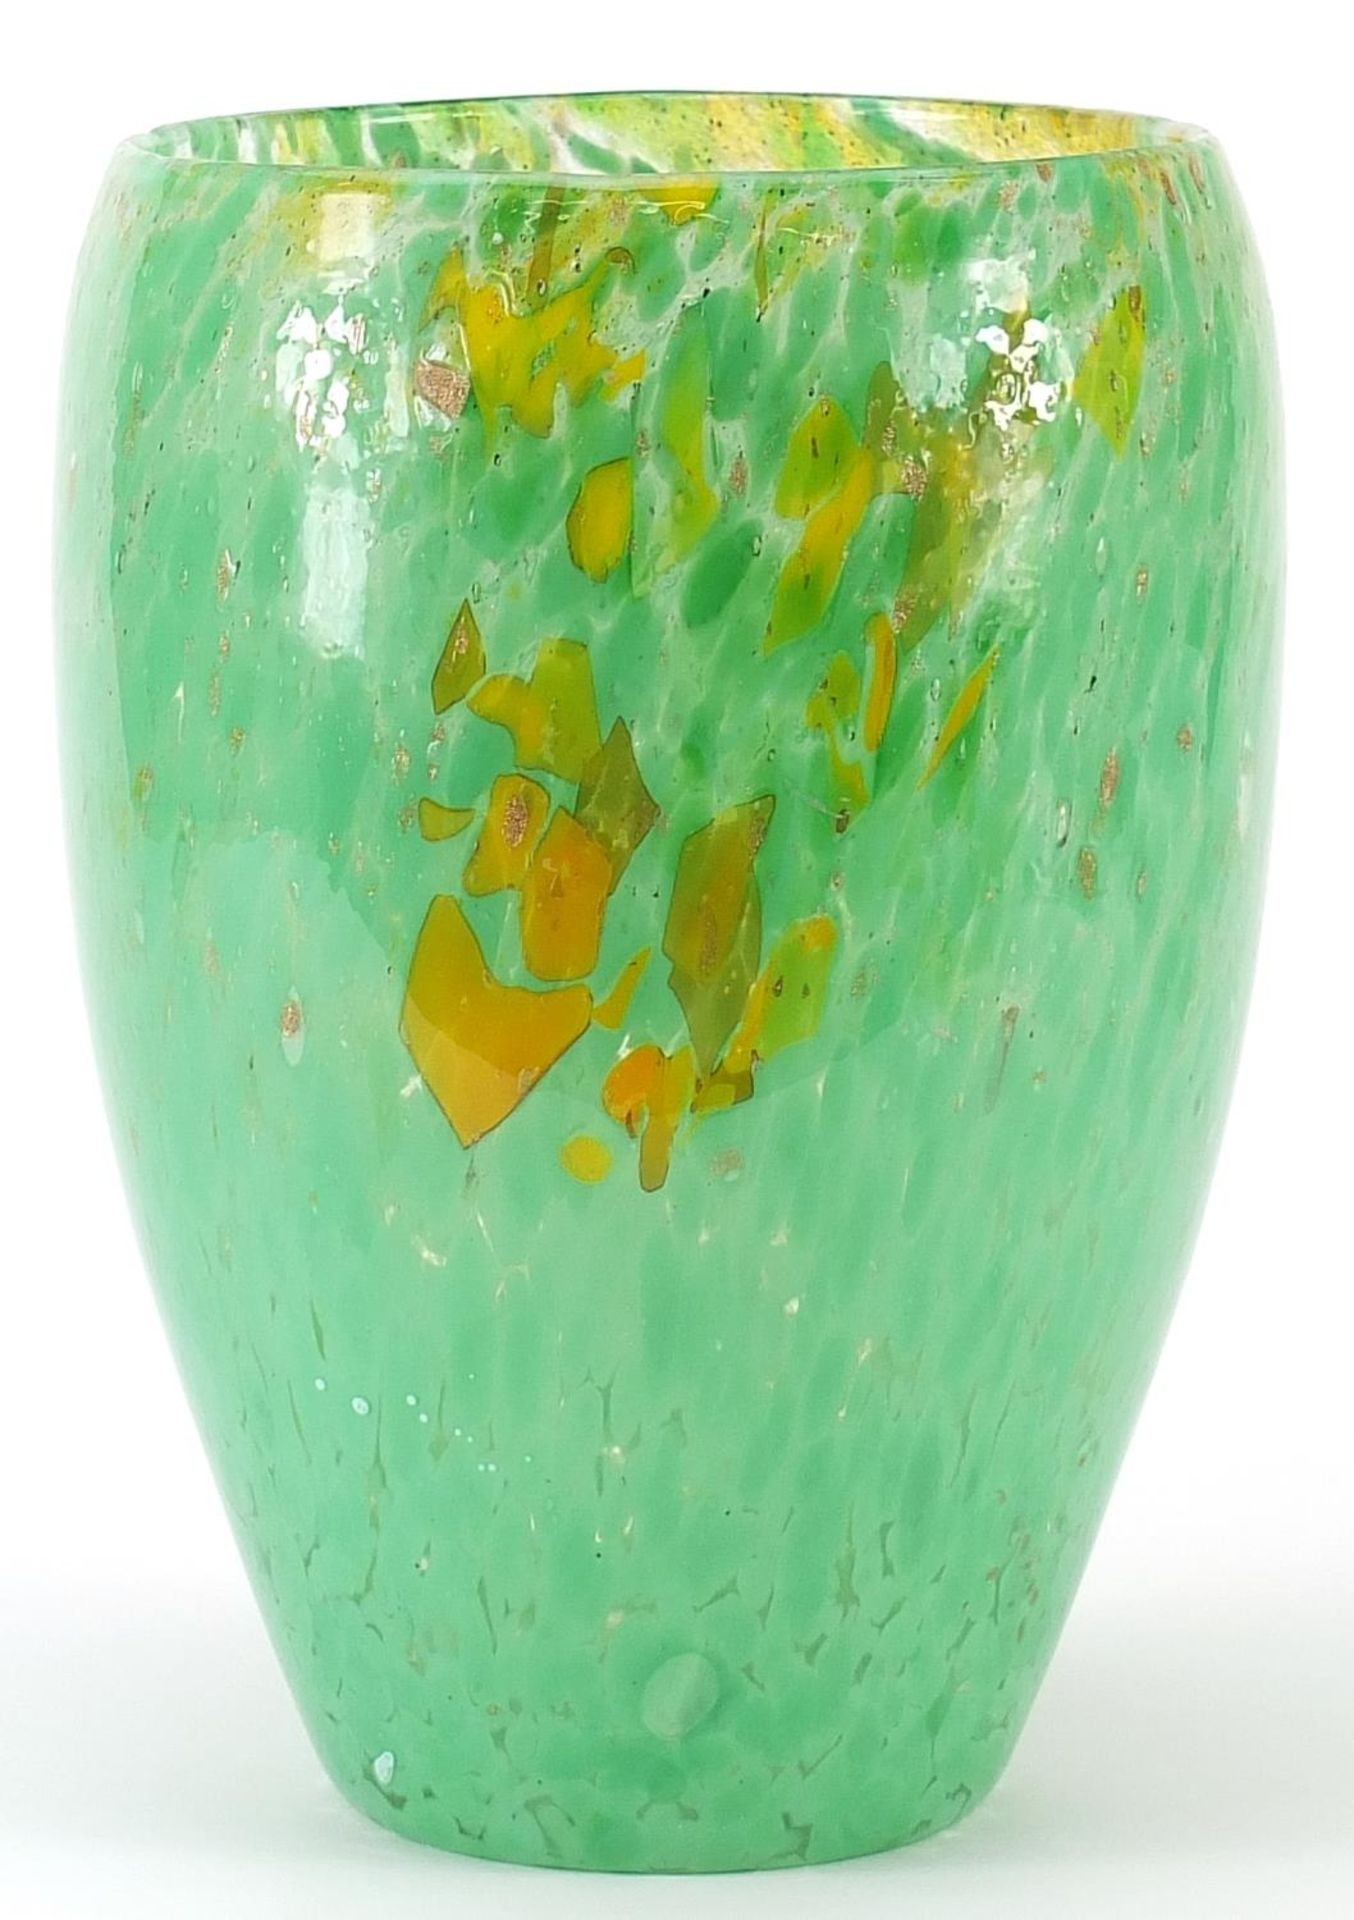 Large Scottish mottled art glass vase, possibly by Monart or Vasart, 25.5cm high - Image 2 of 3